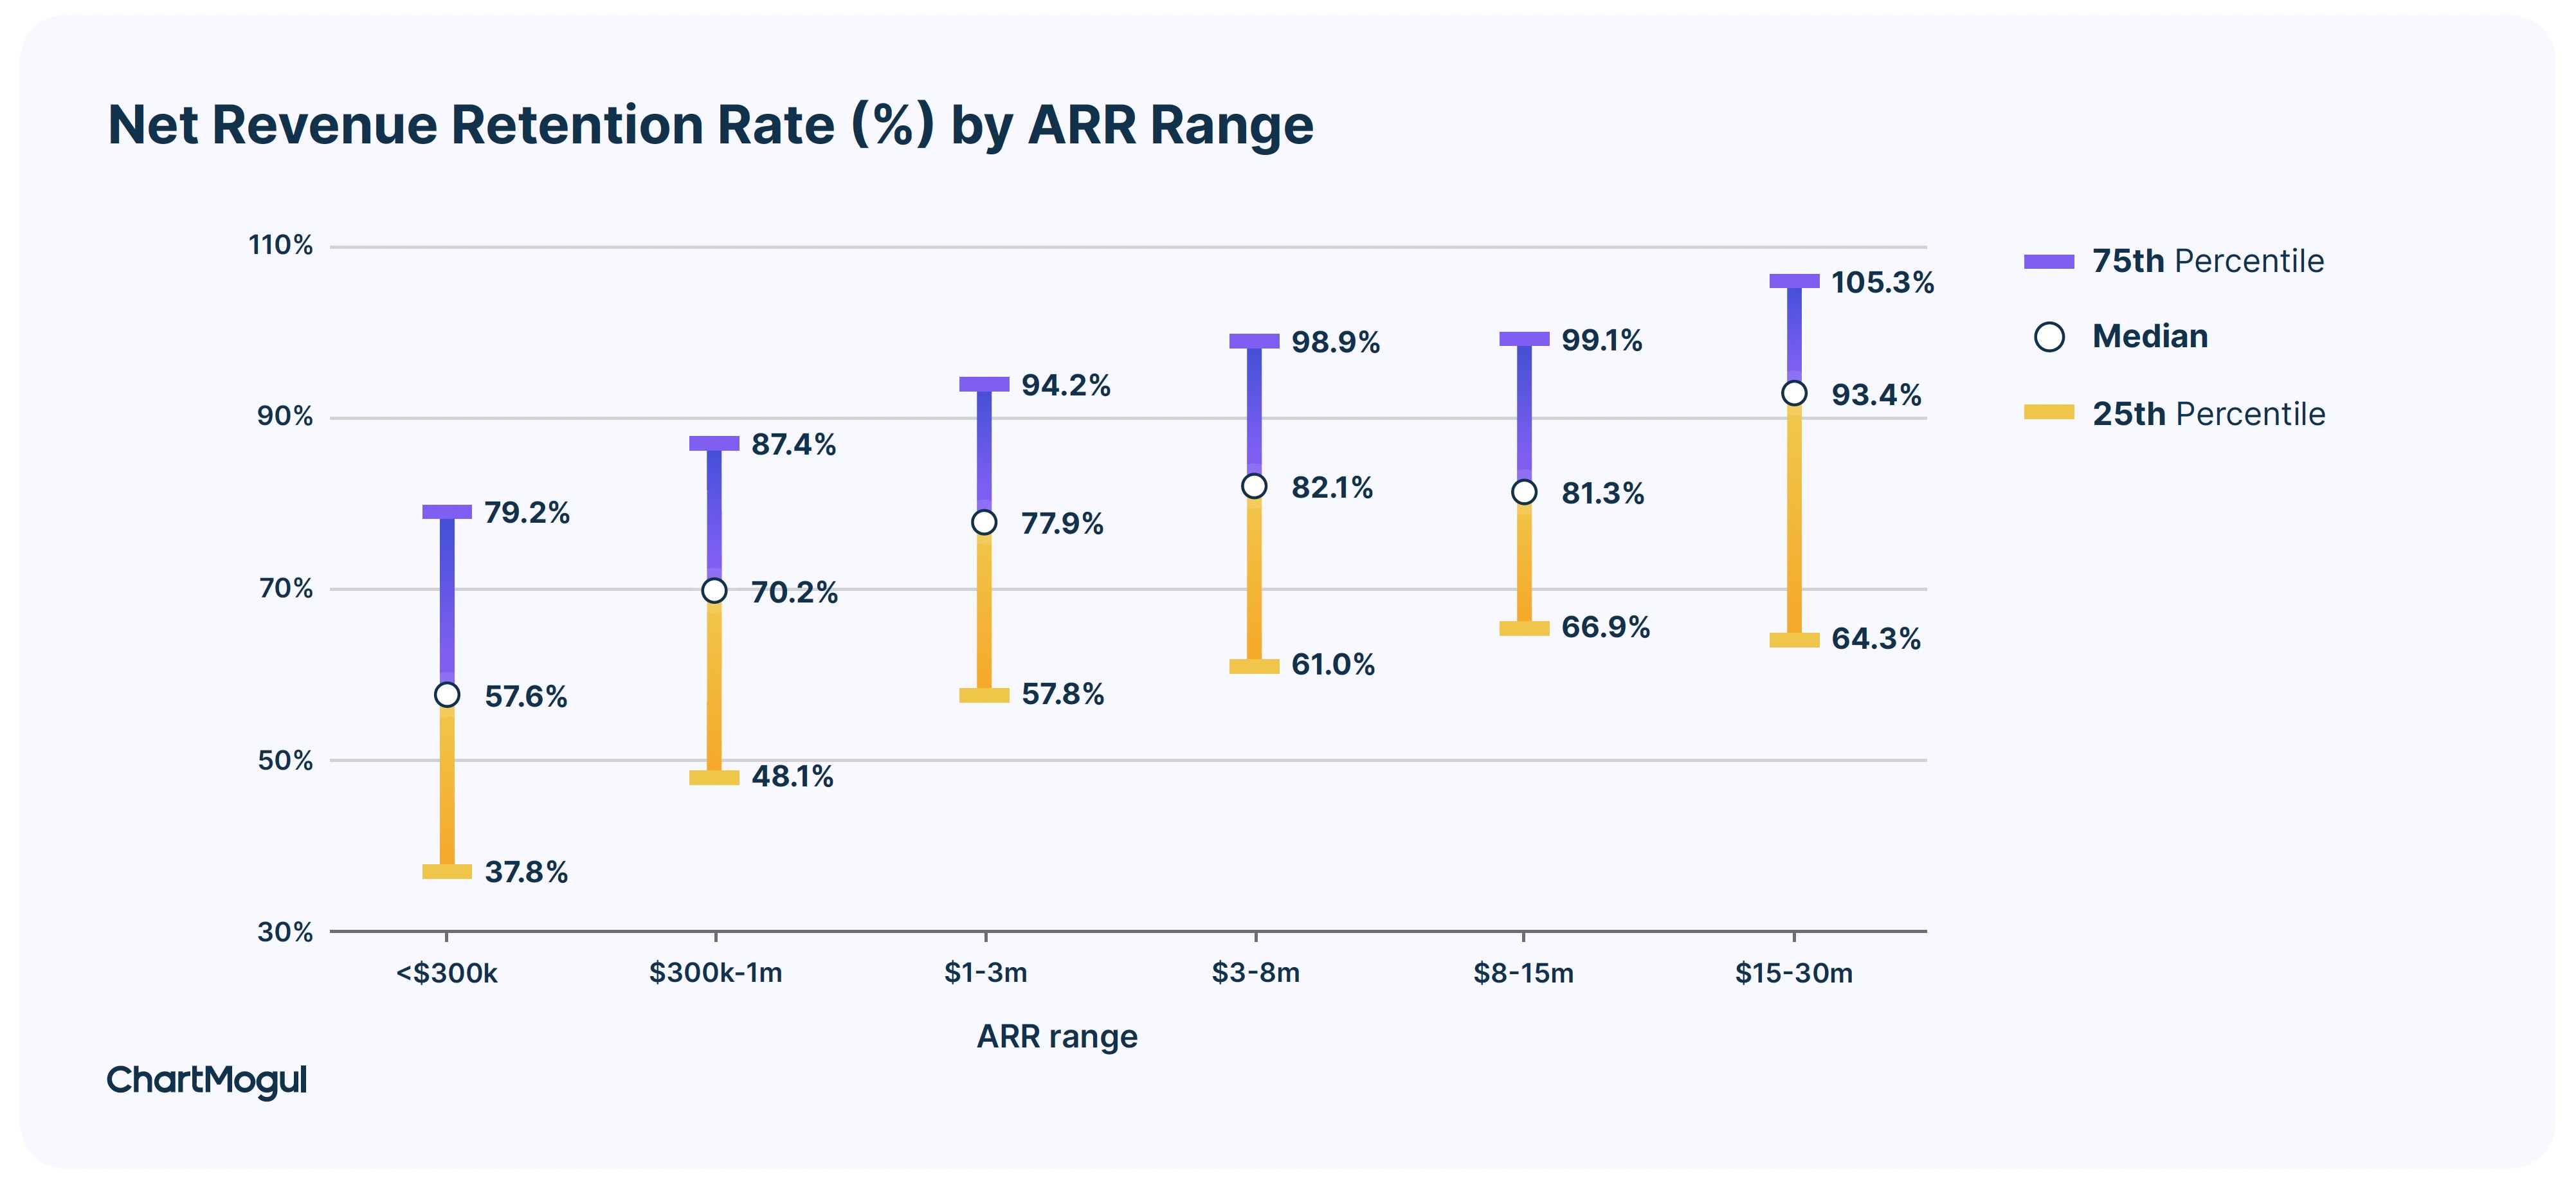 Net revenue retention rate (%) by ARR range